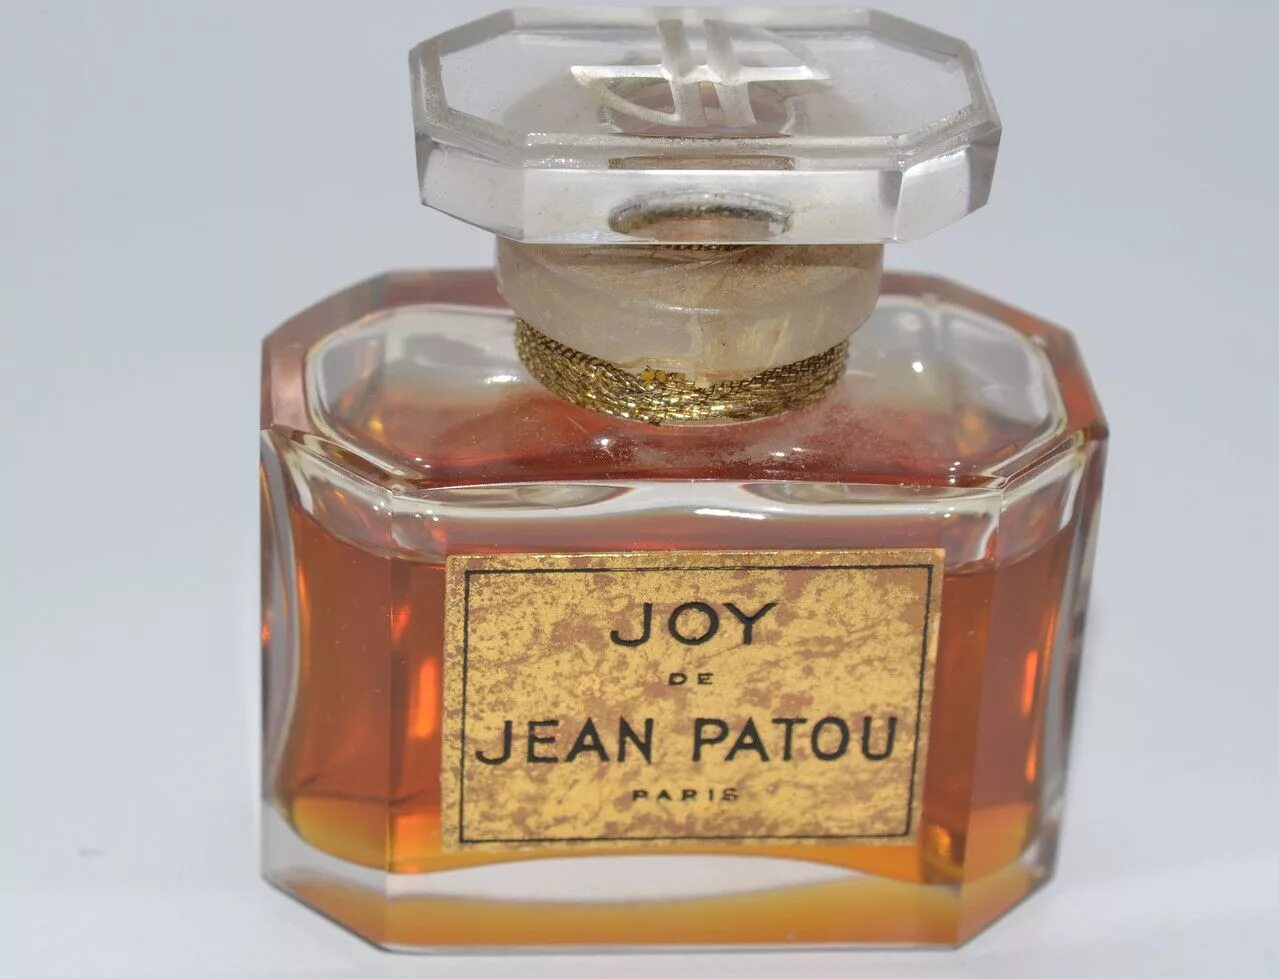 Популярные дорогие духи. Туалетная вода Jean Patou. Joy от Jean Patou. Дорогие духи. Дорогой Парфюм.